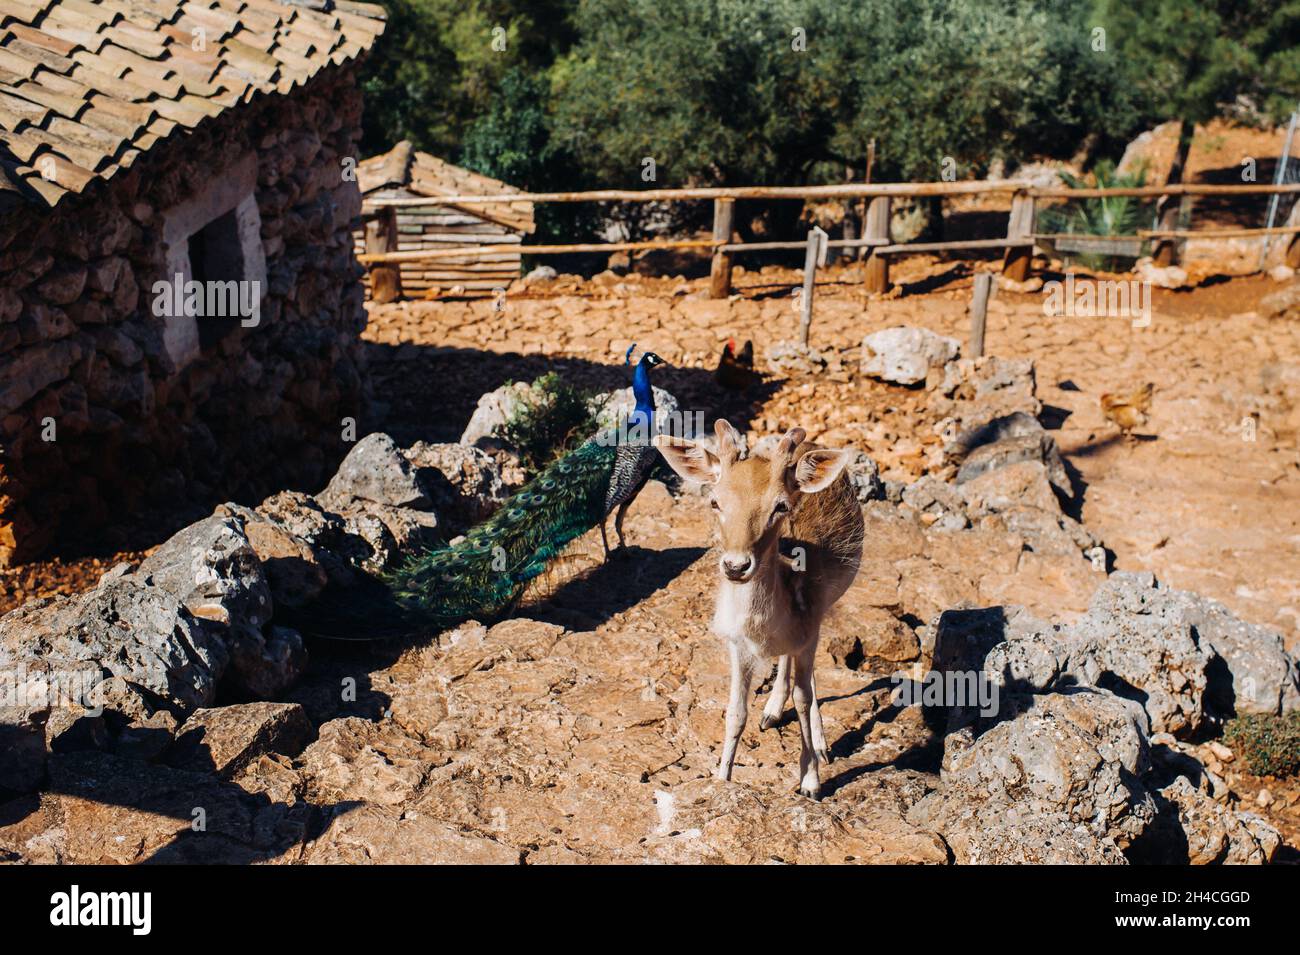 Hirsch und Pfau in einem offenen Naturschutzgebiet, Zoo, Reserve auf der Insel Zakynthos.Griechenland Stockfoto